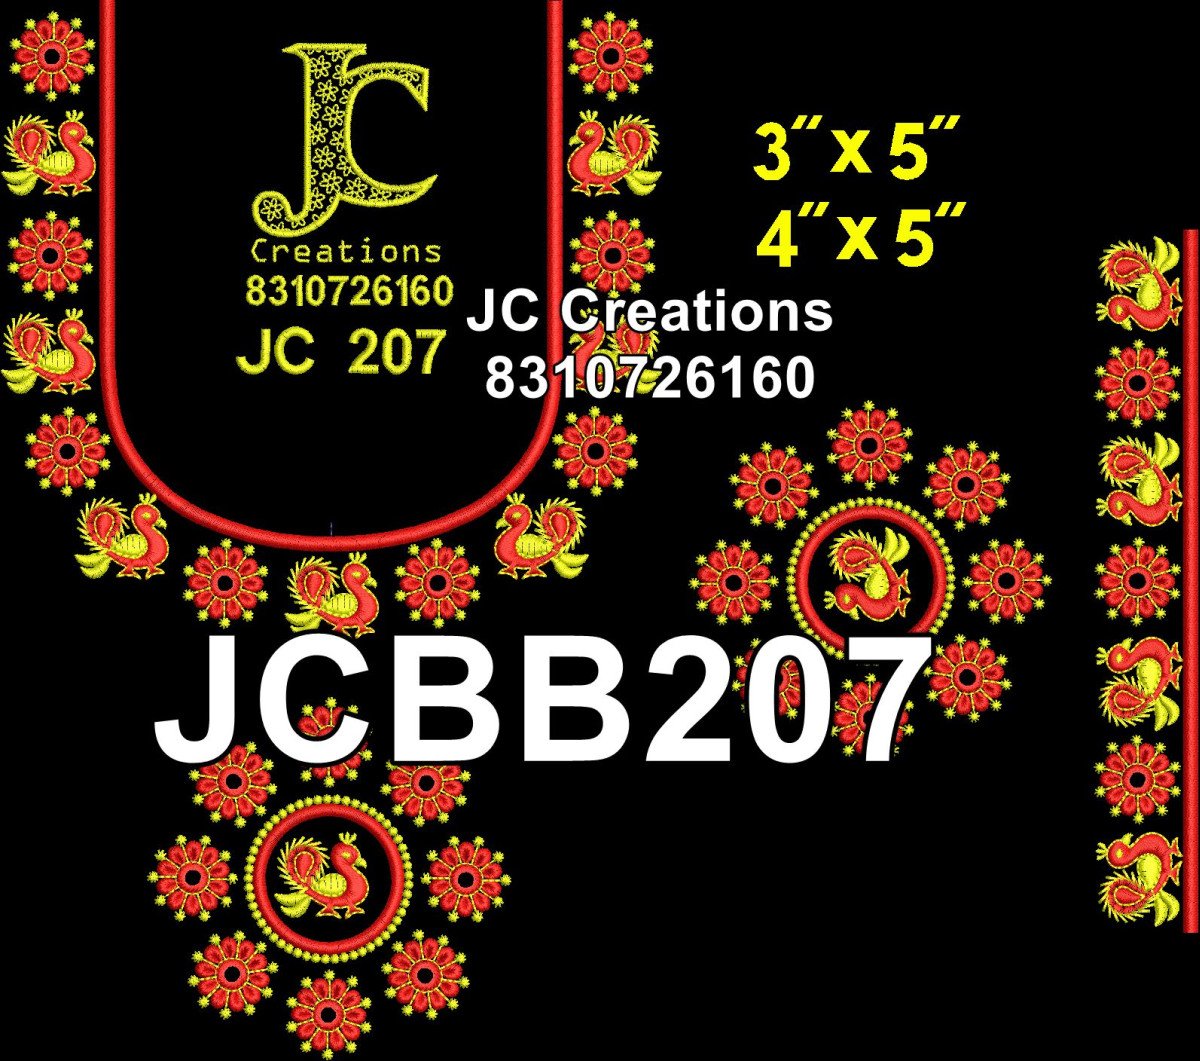 JCBB207